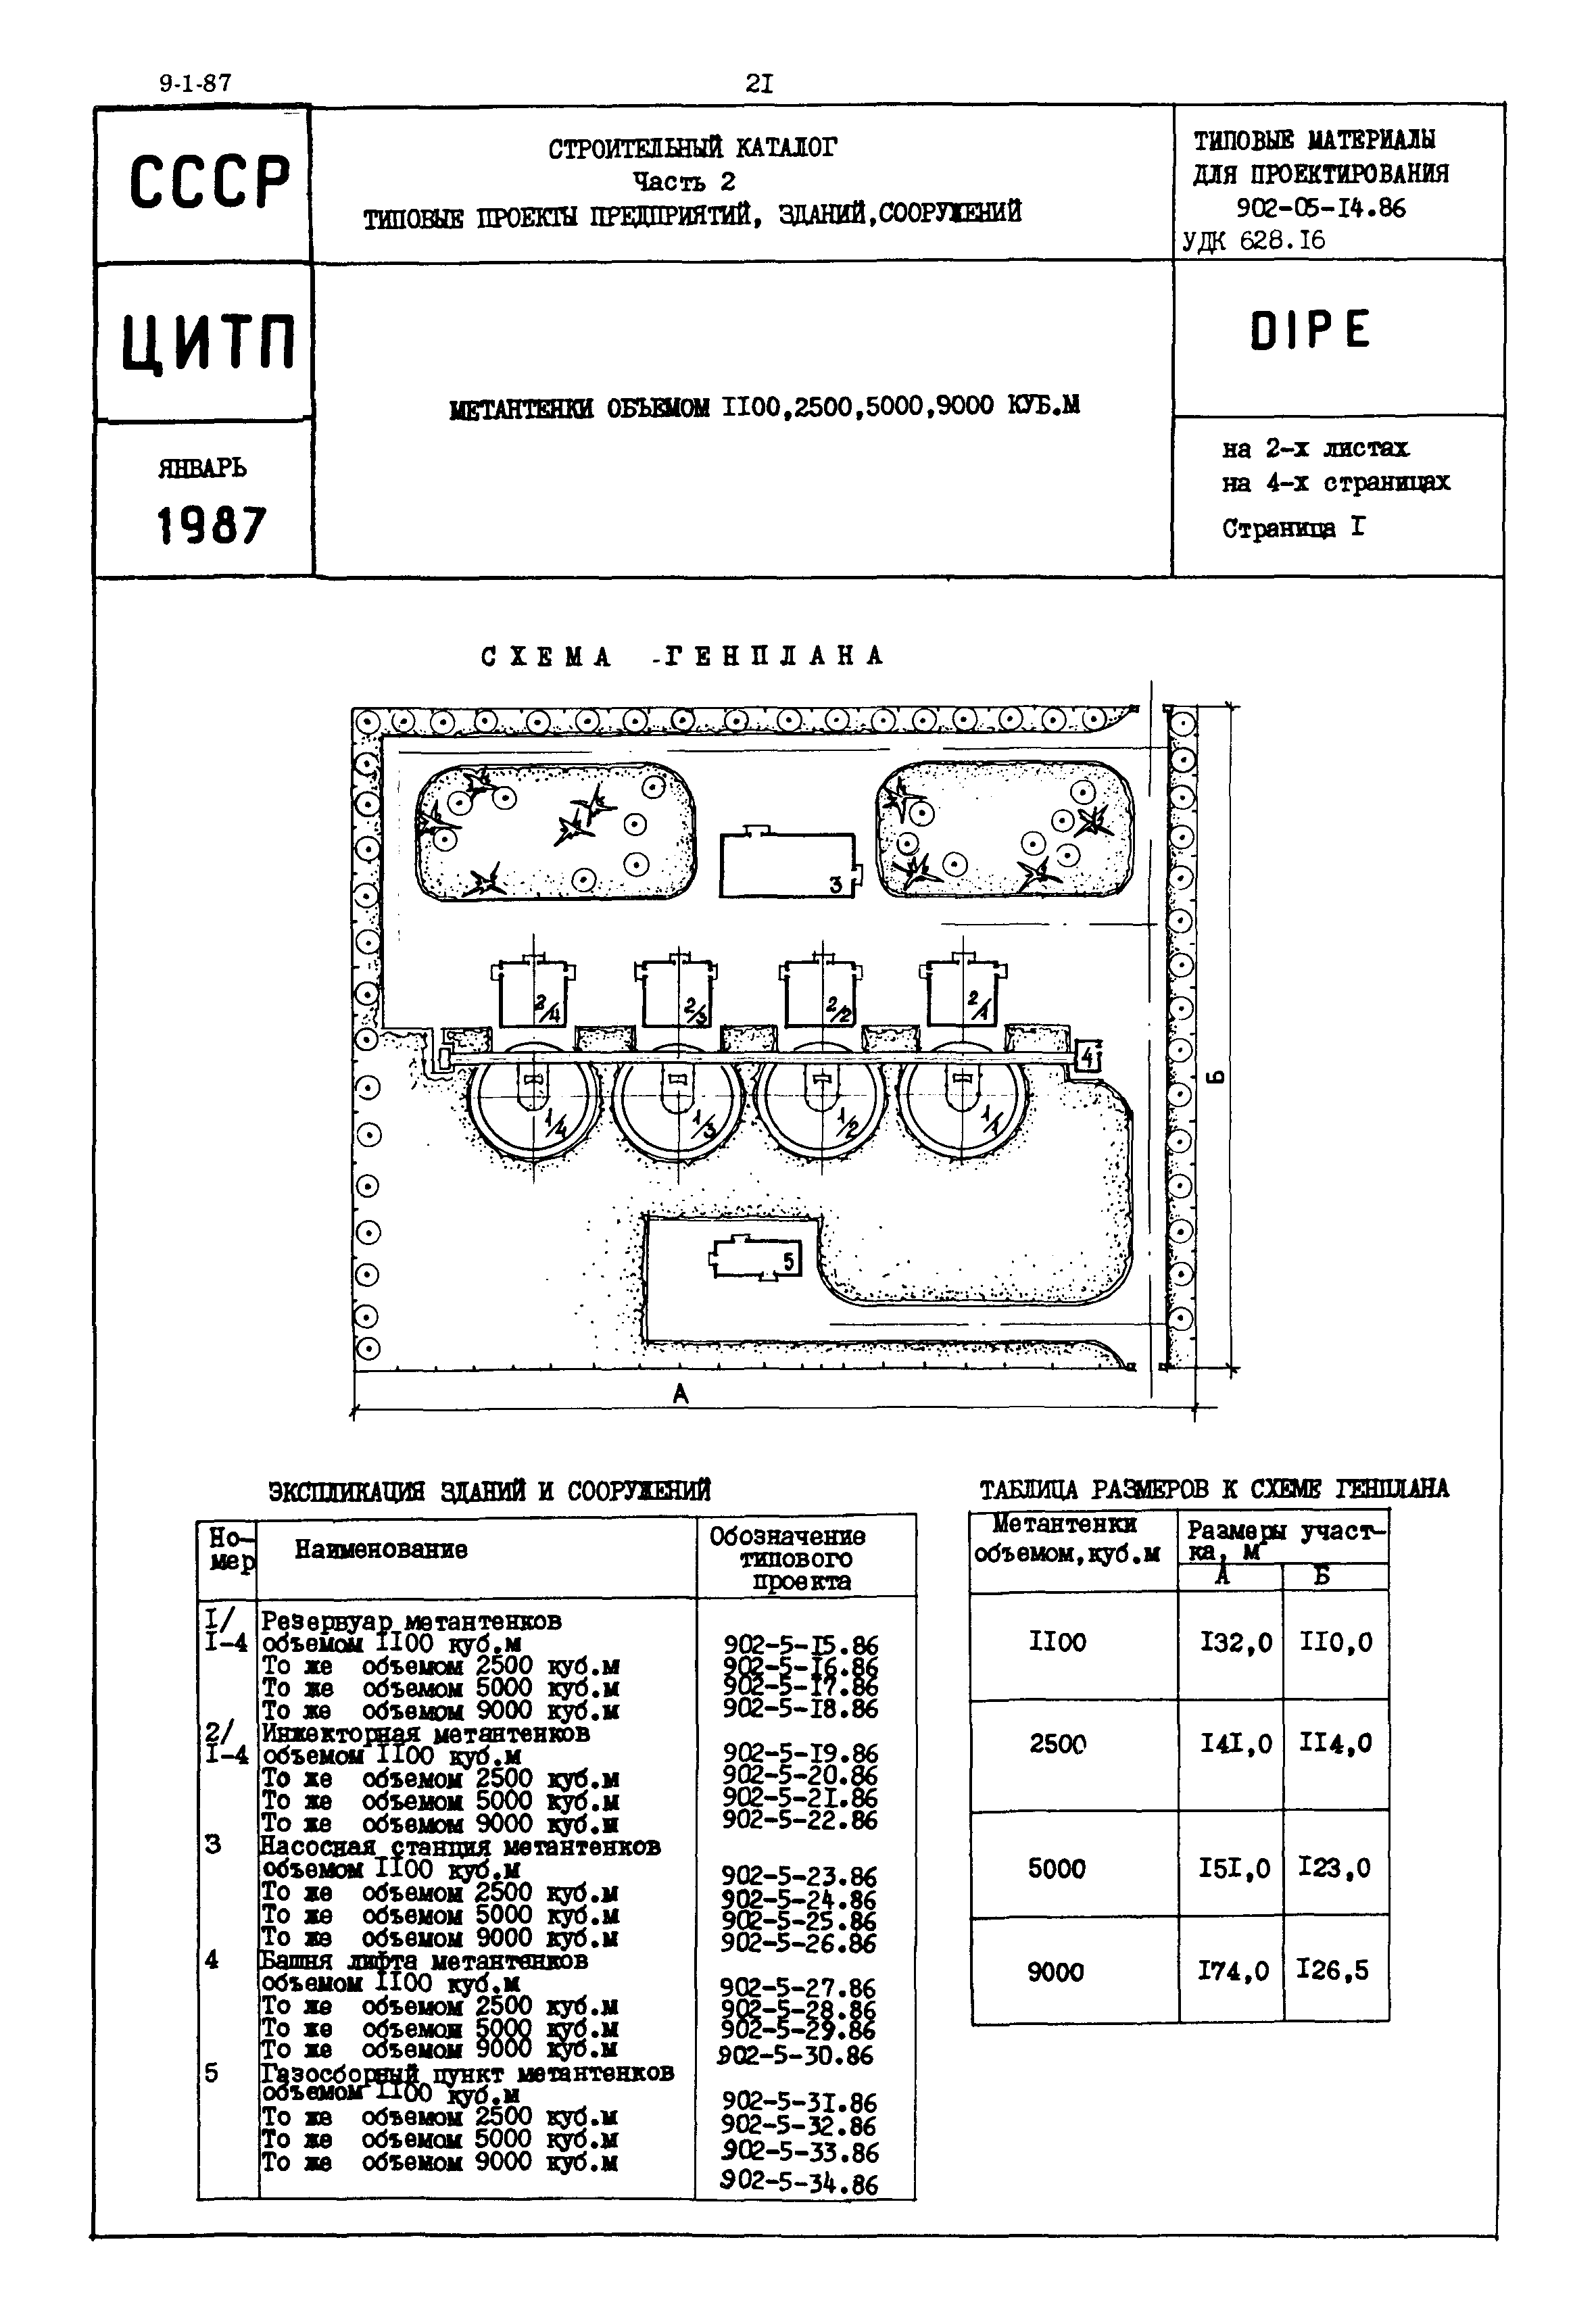 Типовые материалы для проектирования 902-05-14.86